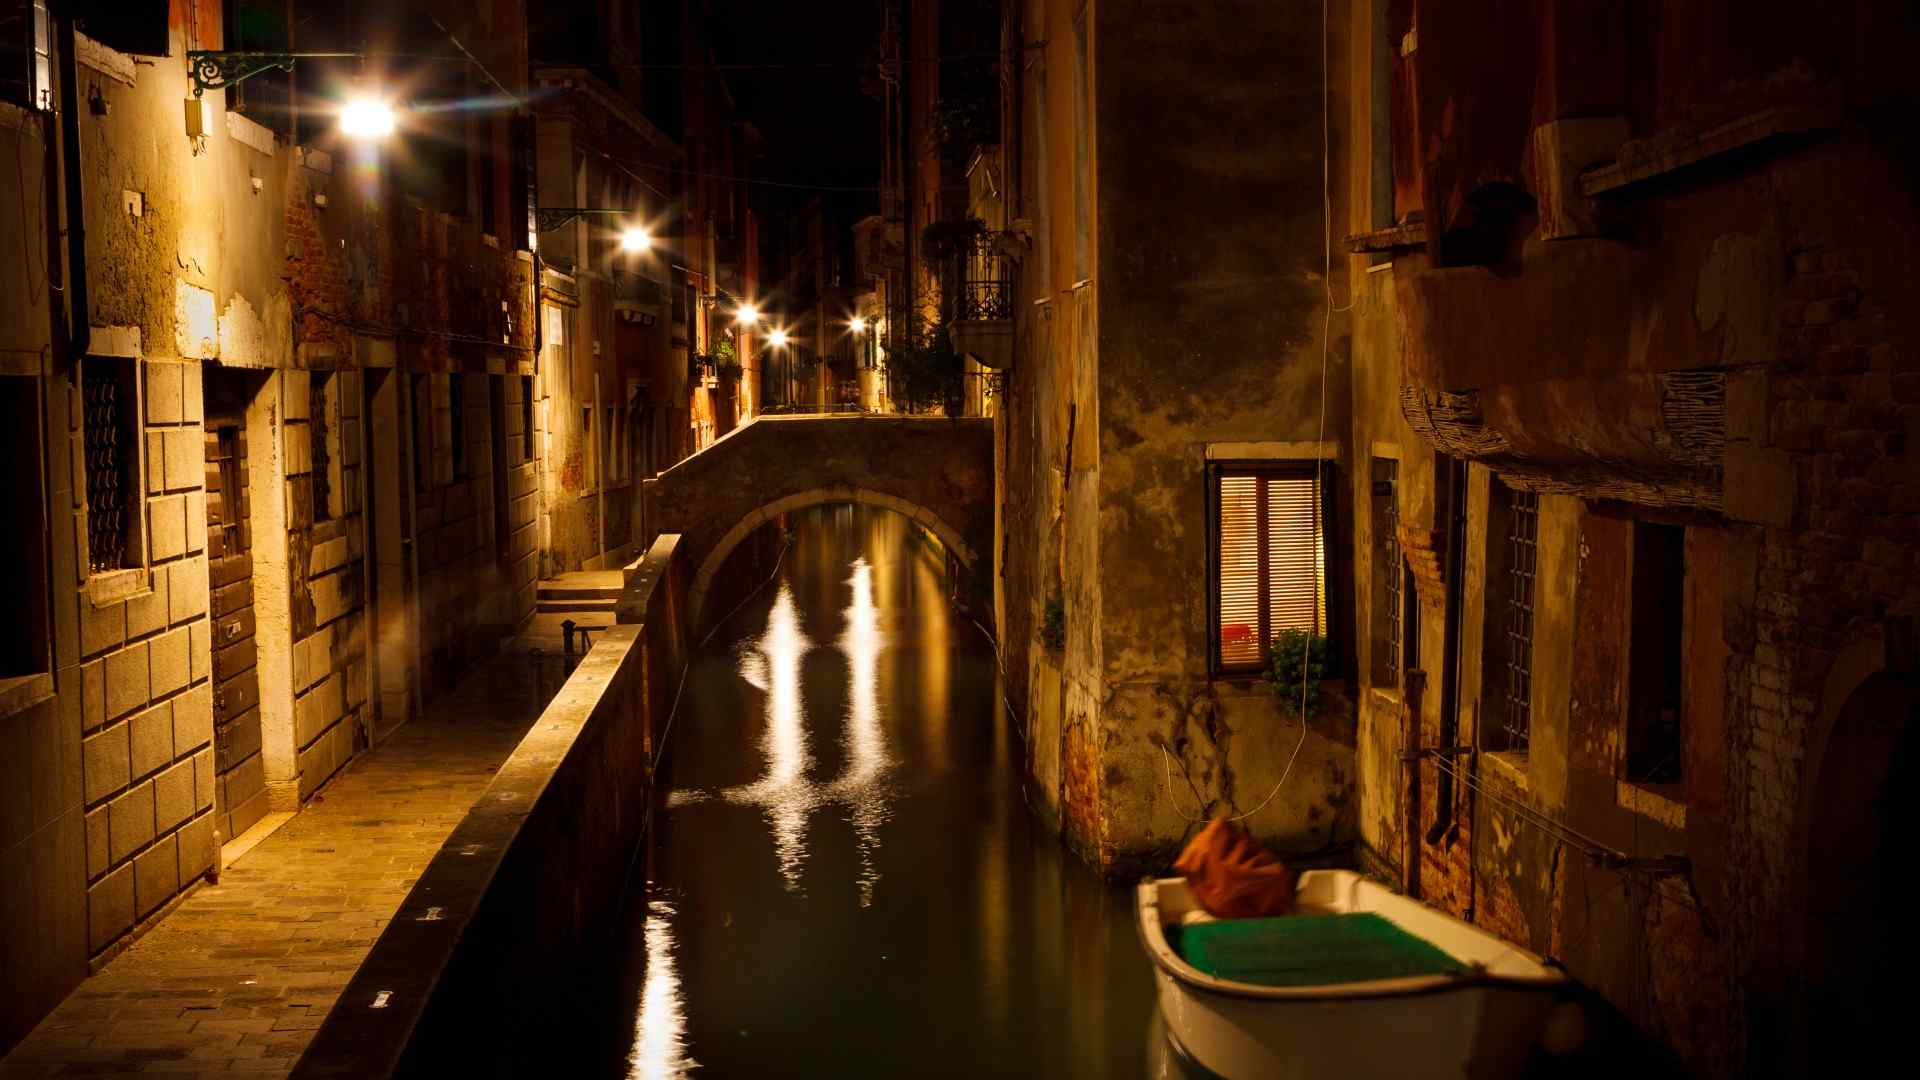 意大利威尼斯晚上风景桌面壁纸